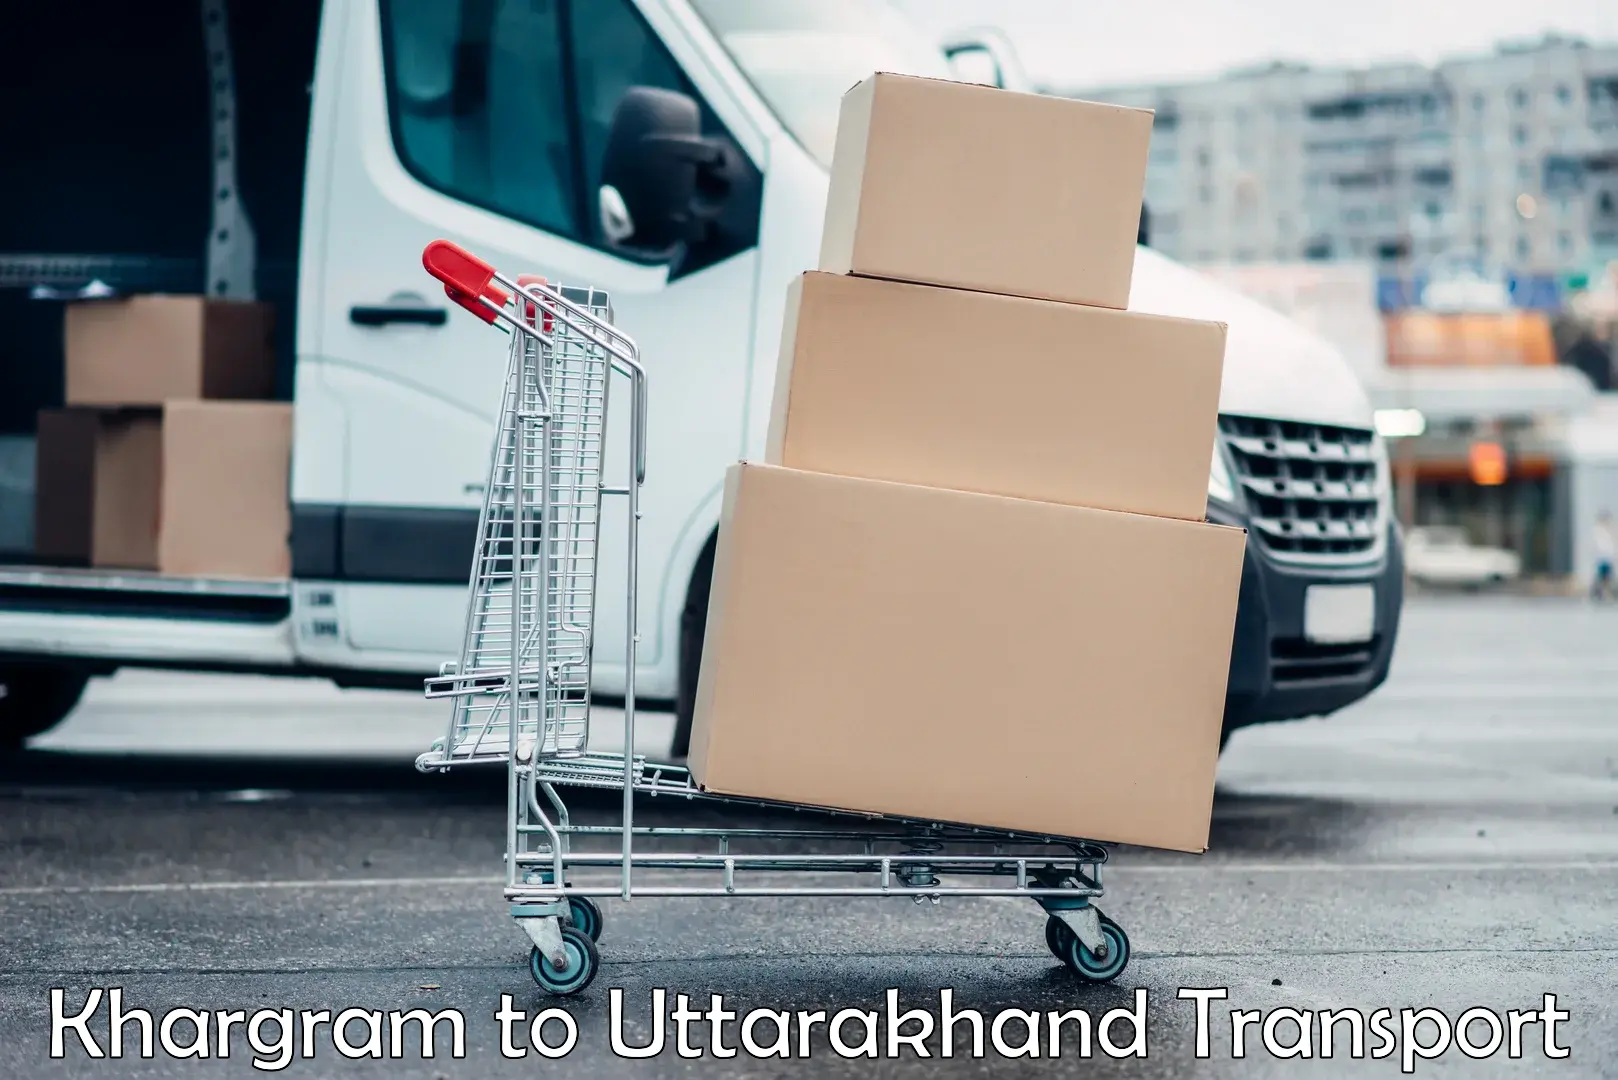 Truck transport companies in India Khargram to Uttarakhand